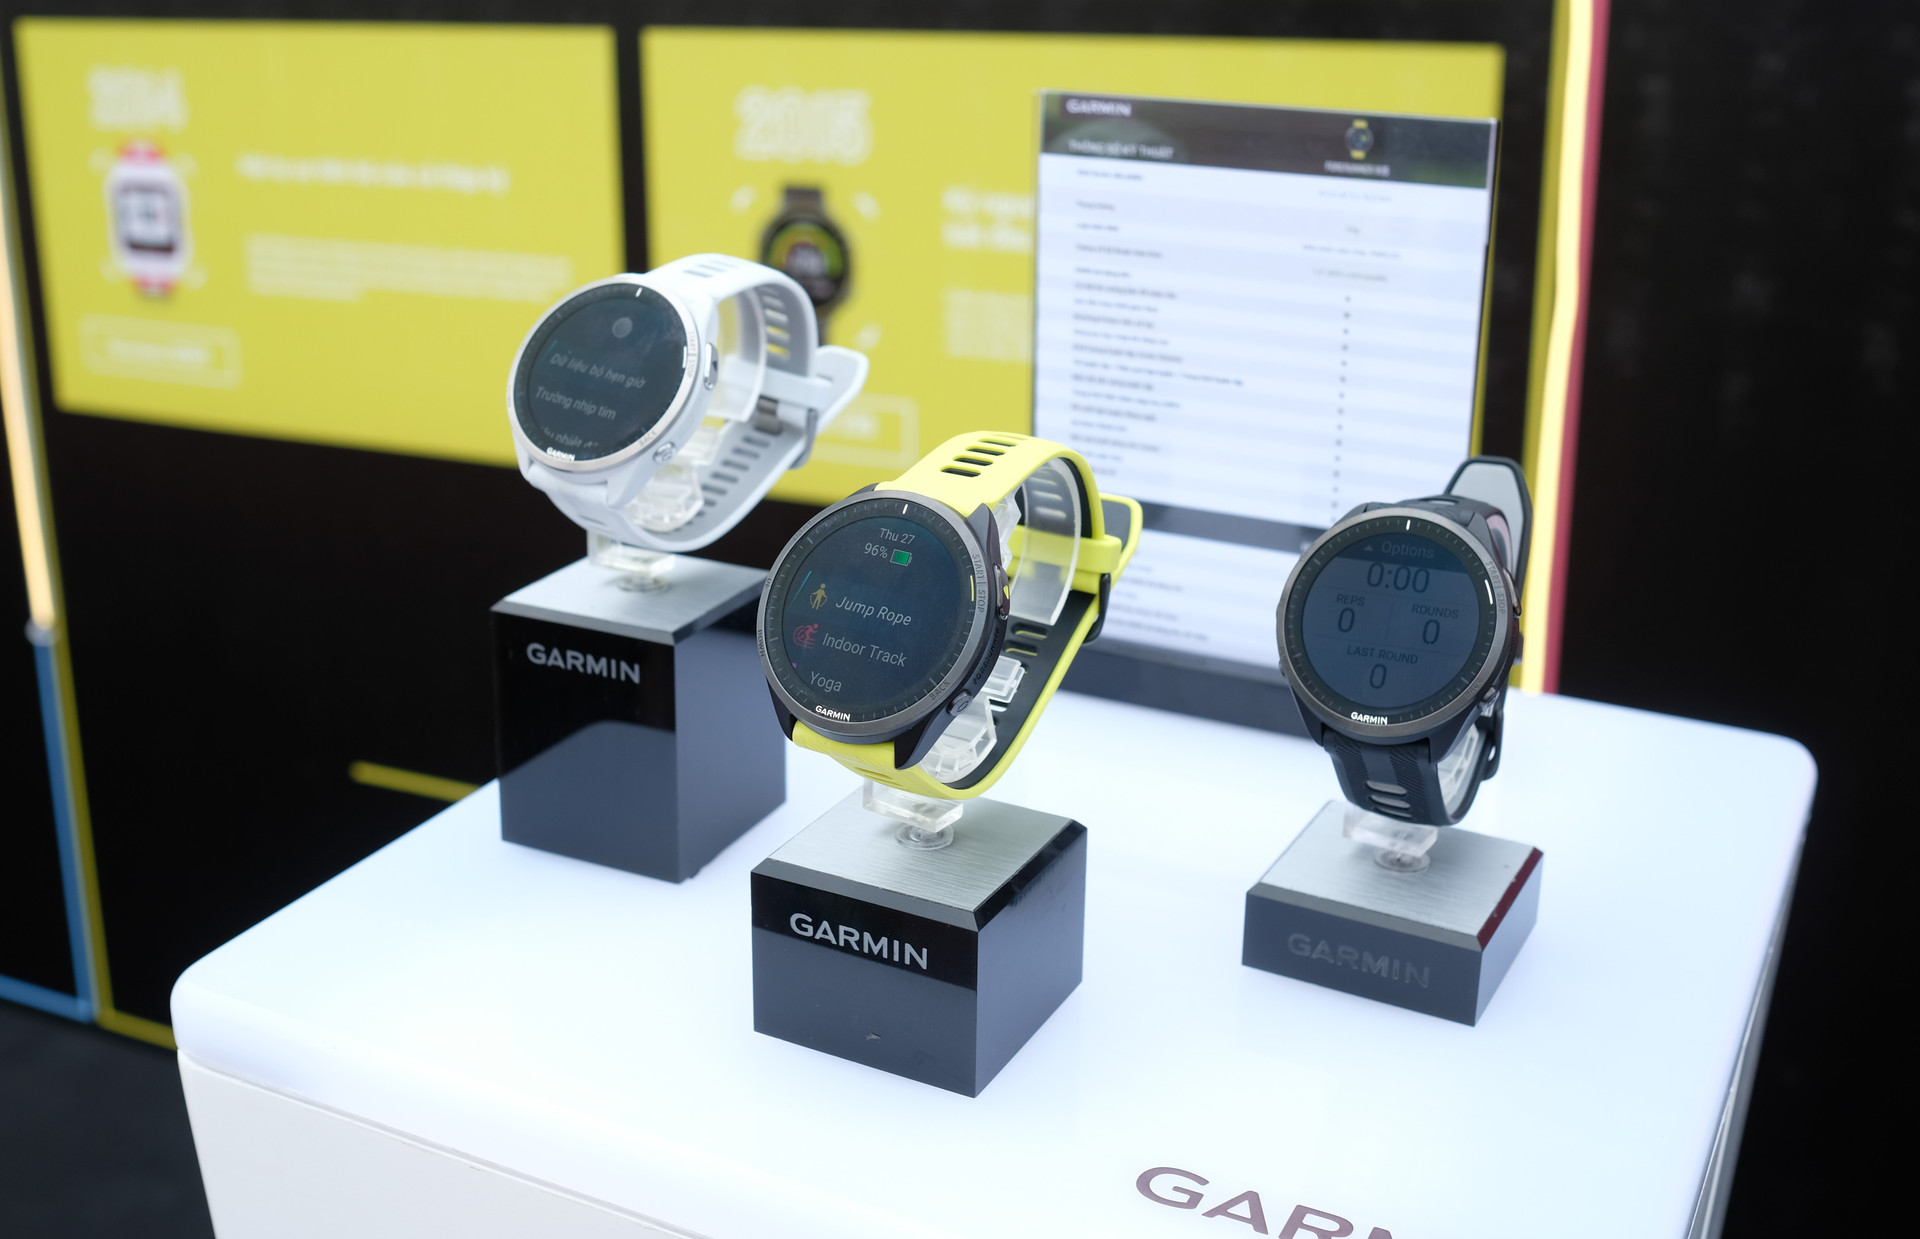 Garmin ra mắt đồng hồ chạy bộ GPS trang bị màn hình AMOLED đầu tiên thế giới, giá từ 11,7 triệu đồng - Ảnh 5.